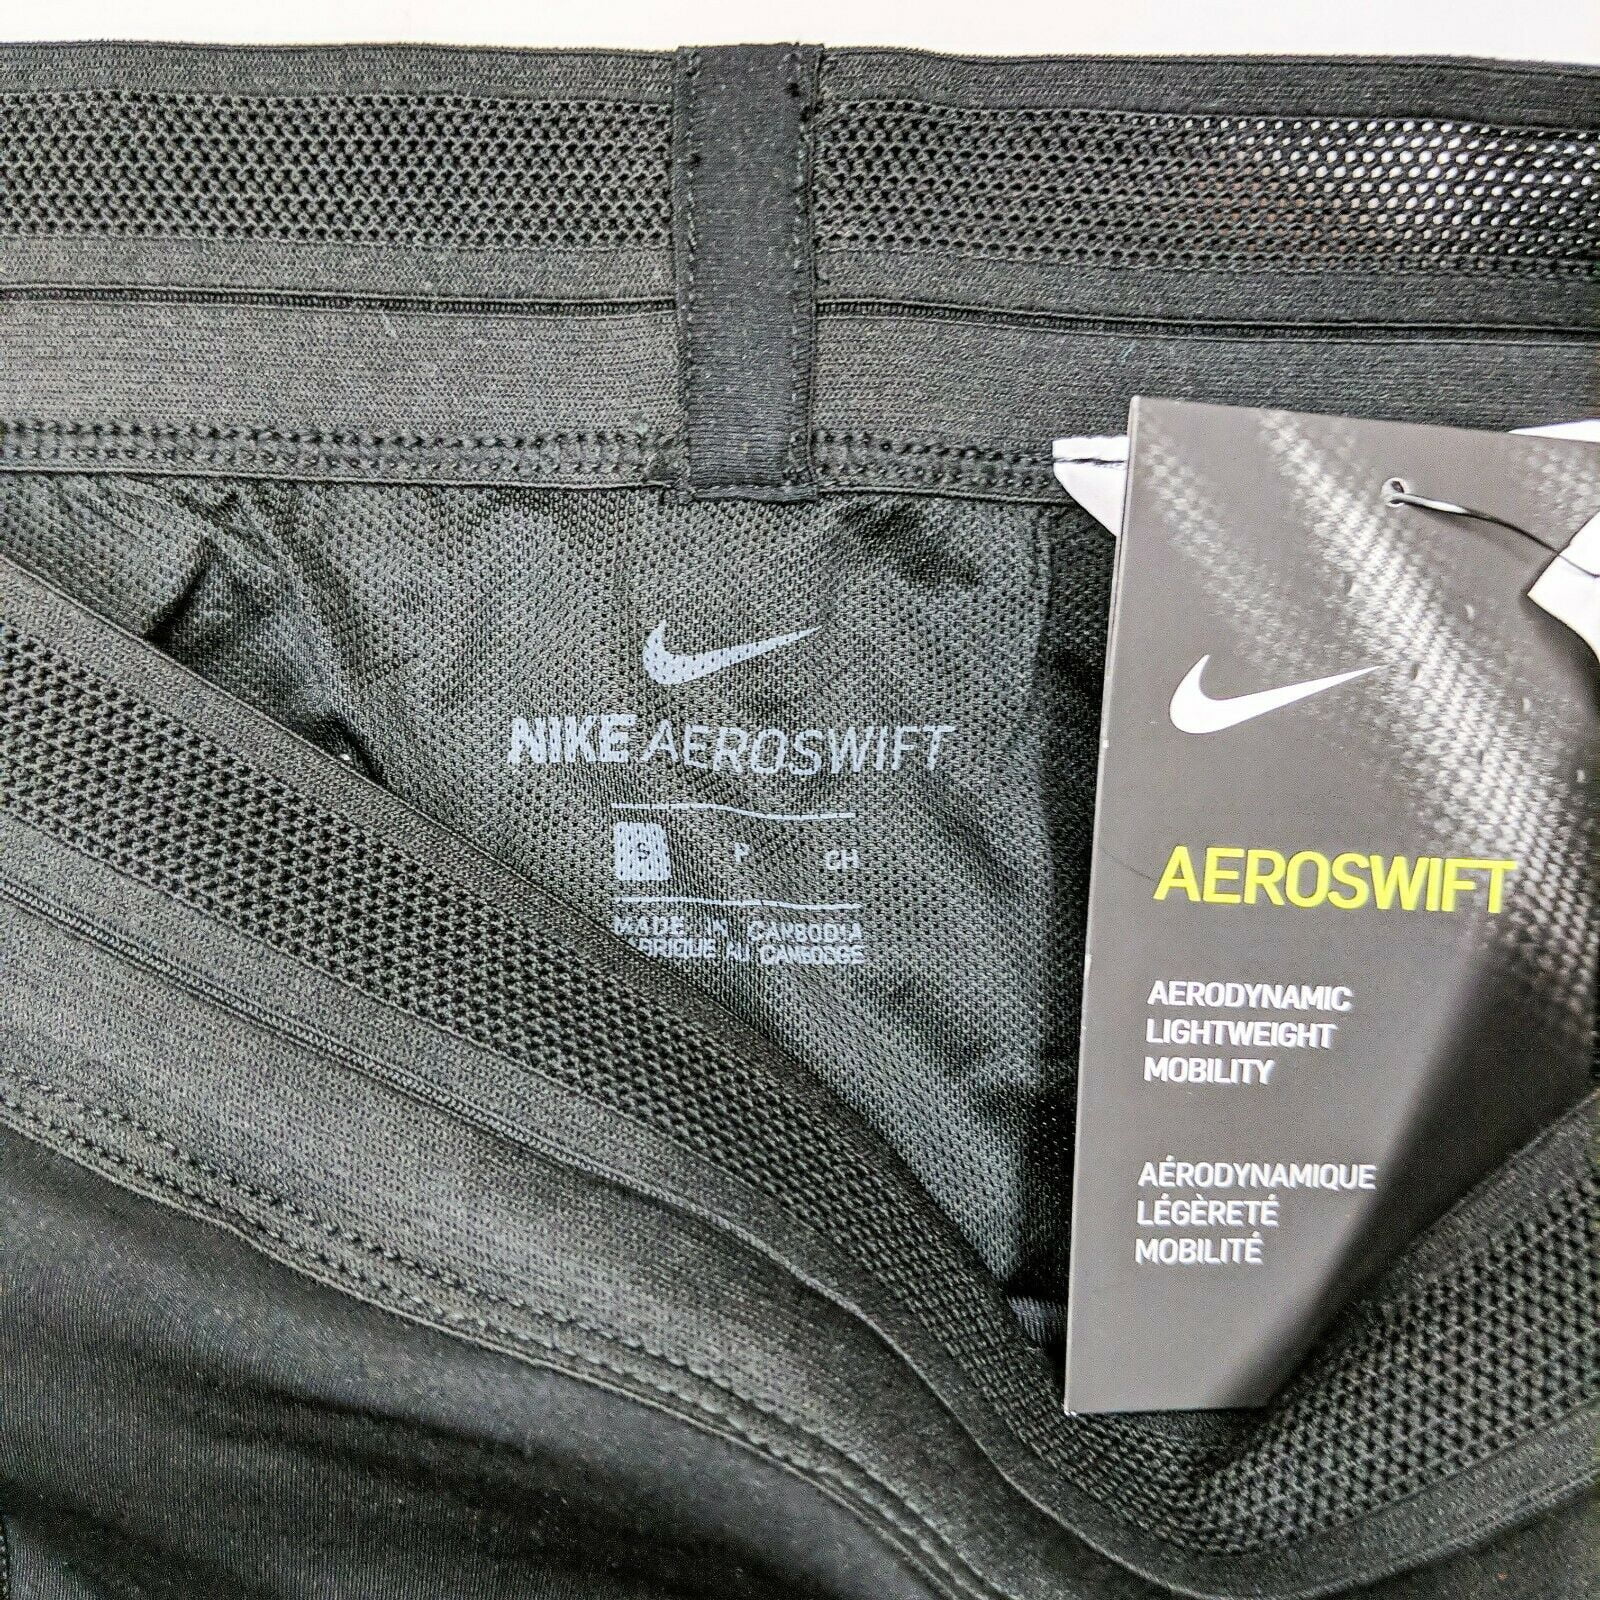 NEW Nike Aeroswift 1/2 Half Tight Running Racing Black Men's Size XL  AR3246-010 